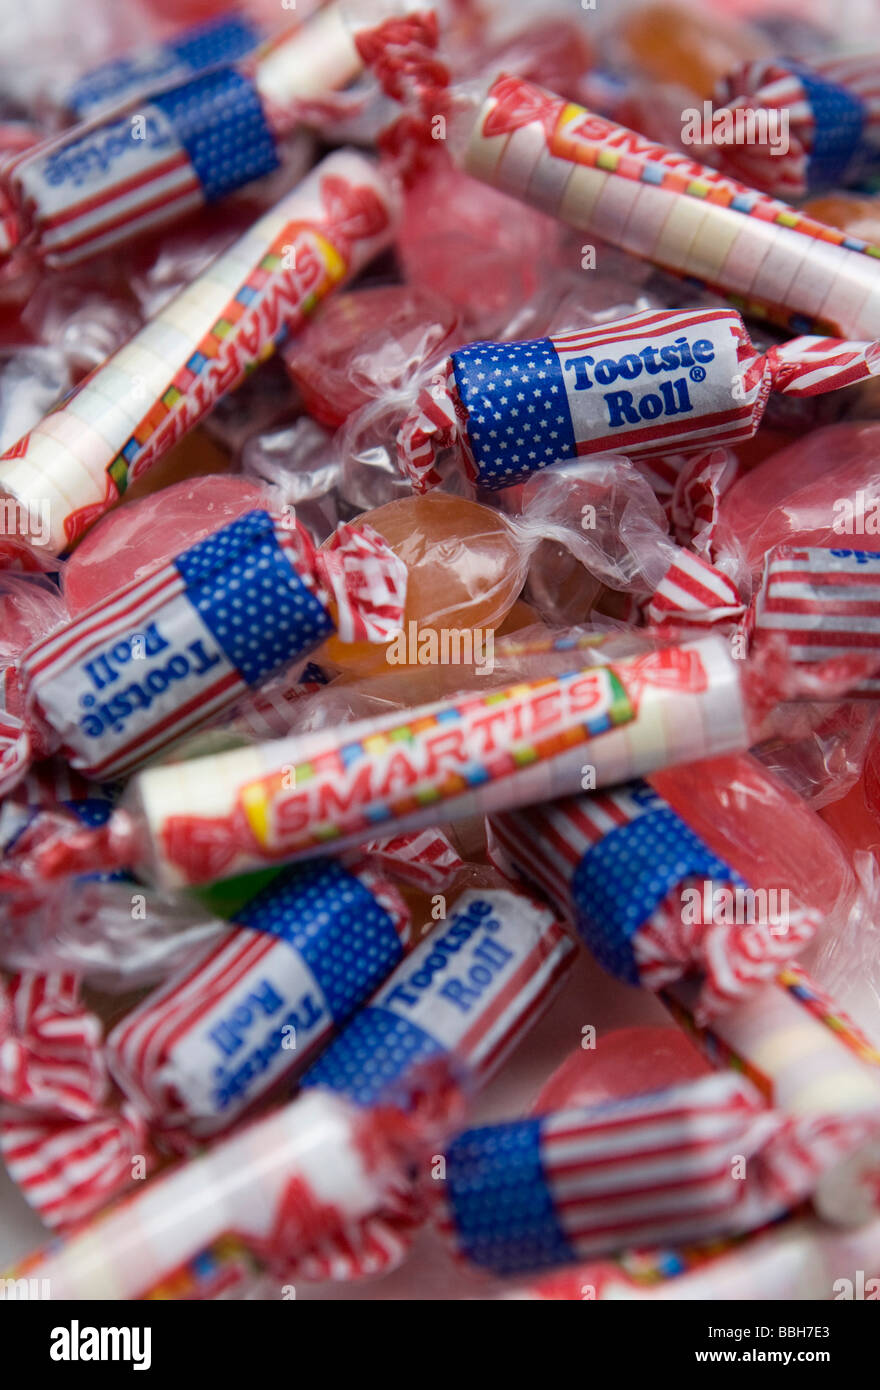 Hard Candy bandiera americana Tootsie rotoli e Smarties Candy la vendita negli Stati Uniti è rimasta forte nonostante un attraverso la scheda incre Foto Stock